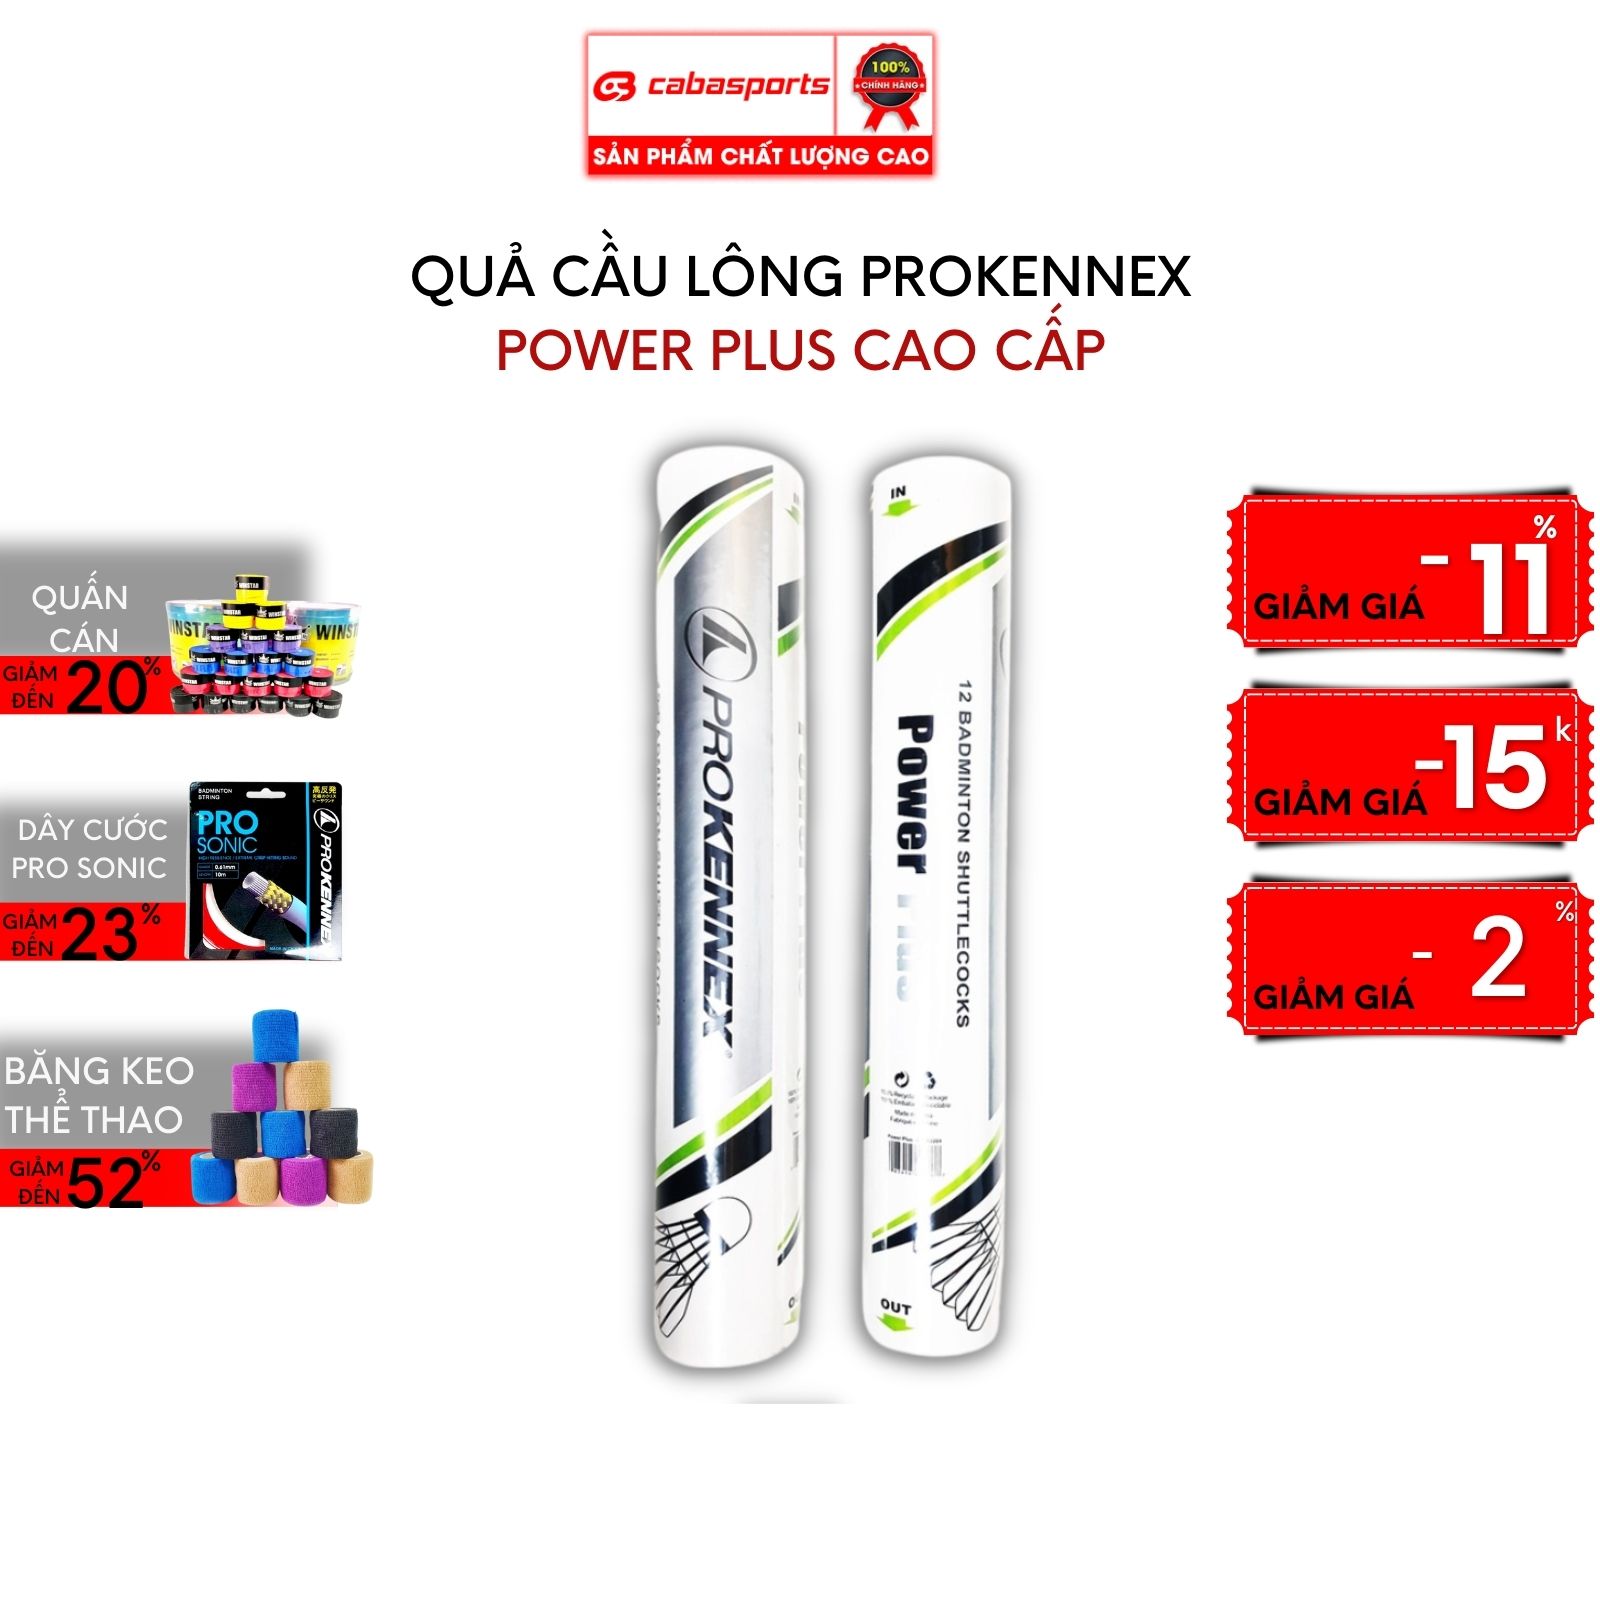 Quả cầu lông Prokennex thi đấu chất lượng chính hãng cao cấp (12 quả)